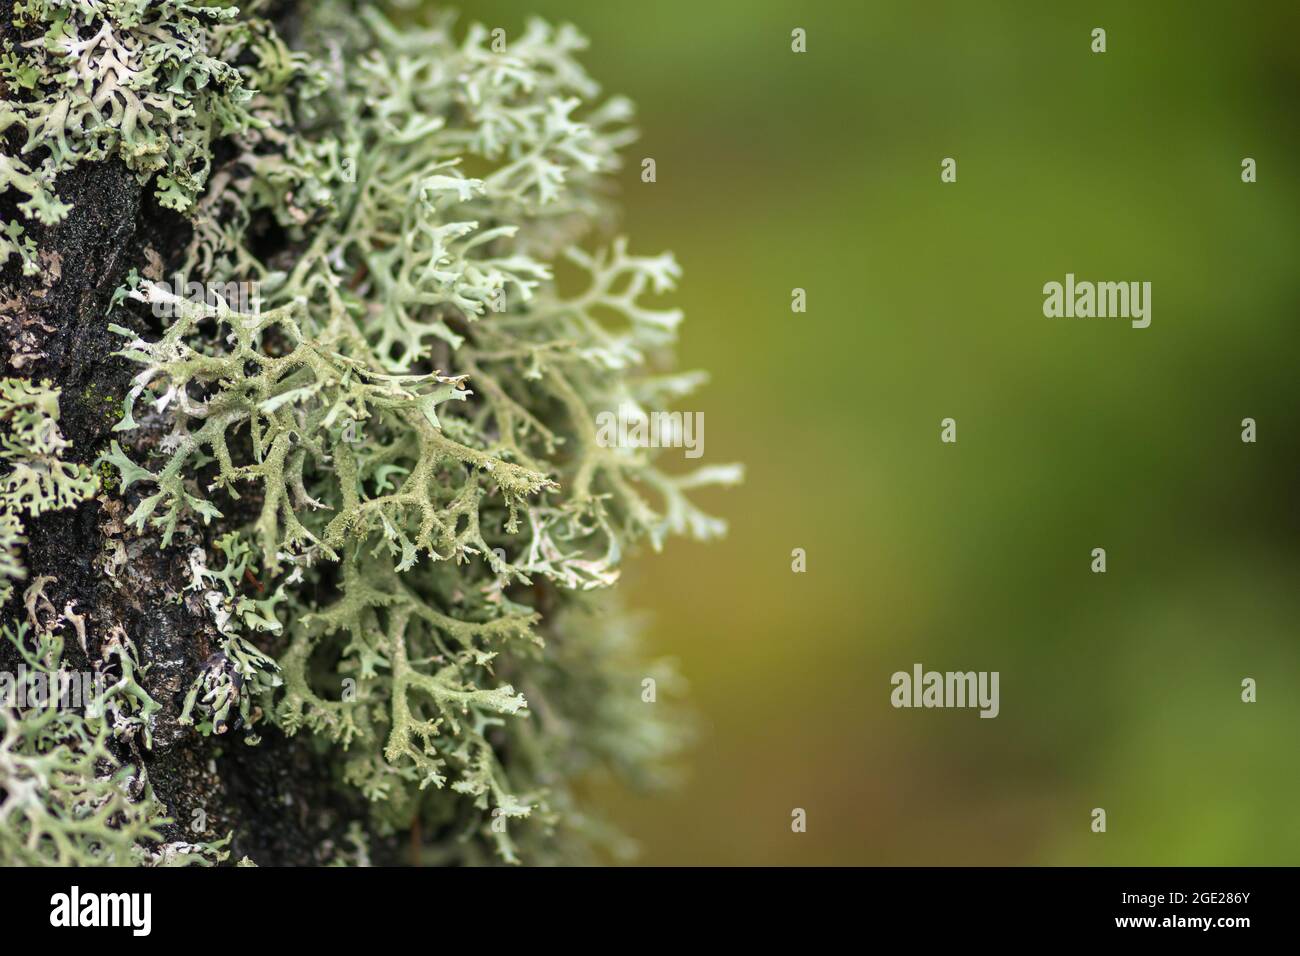 Wunderschöne Vielfalt von üppigem Moos und Flechten auf dem Stamm eines Baumes im Sommer, Nahaufnahme mit verschwommenem Hintergrund Stockfoto